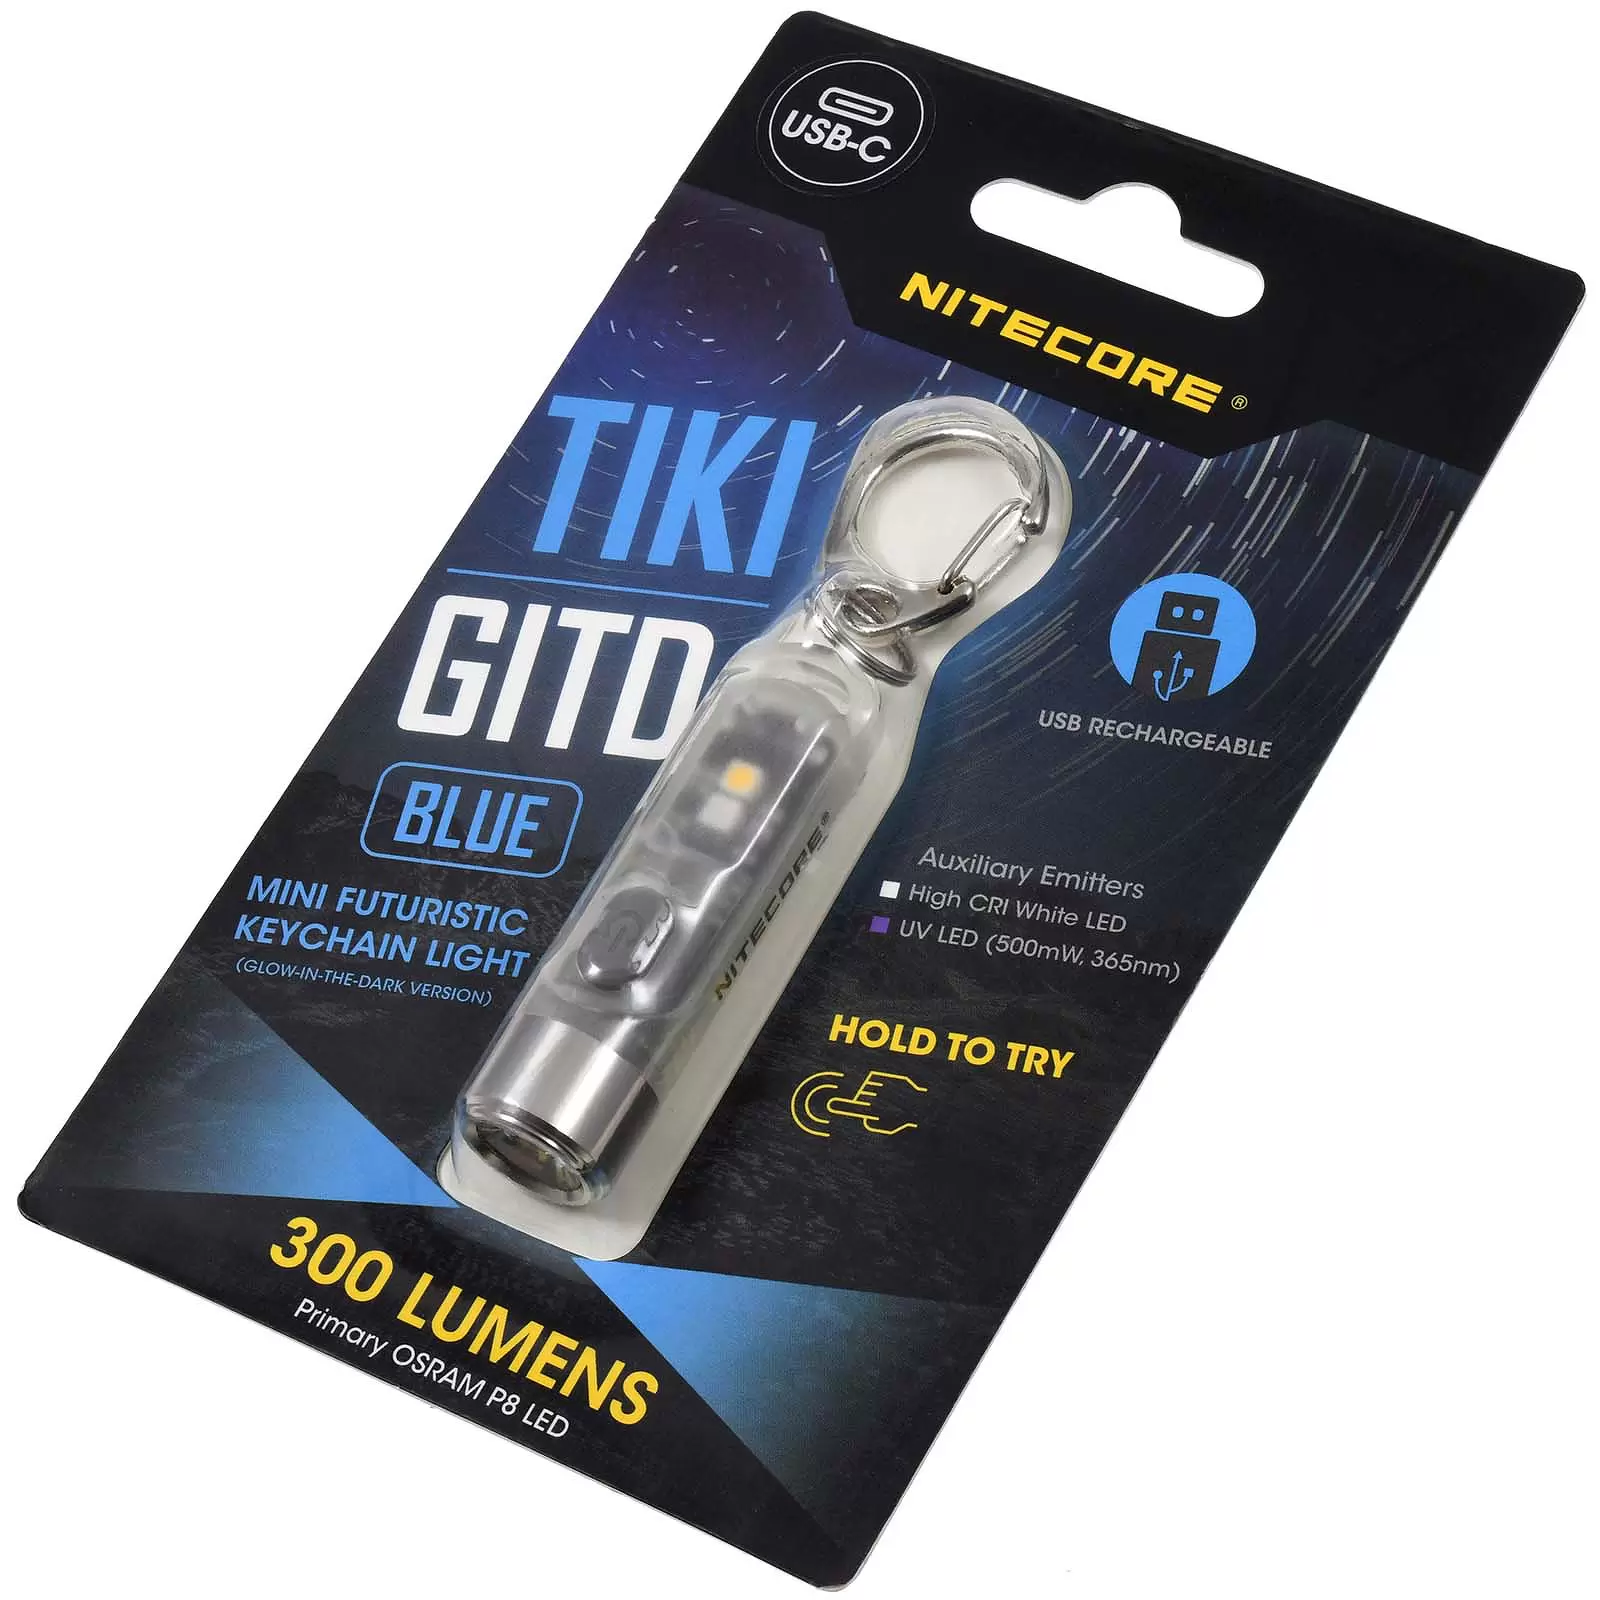 Schlüsselanhänger-Taschenlampe Nitecore TIKI GITD - Glow in the Dark, Blau, mit USB-C